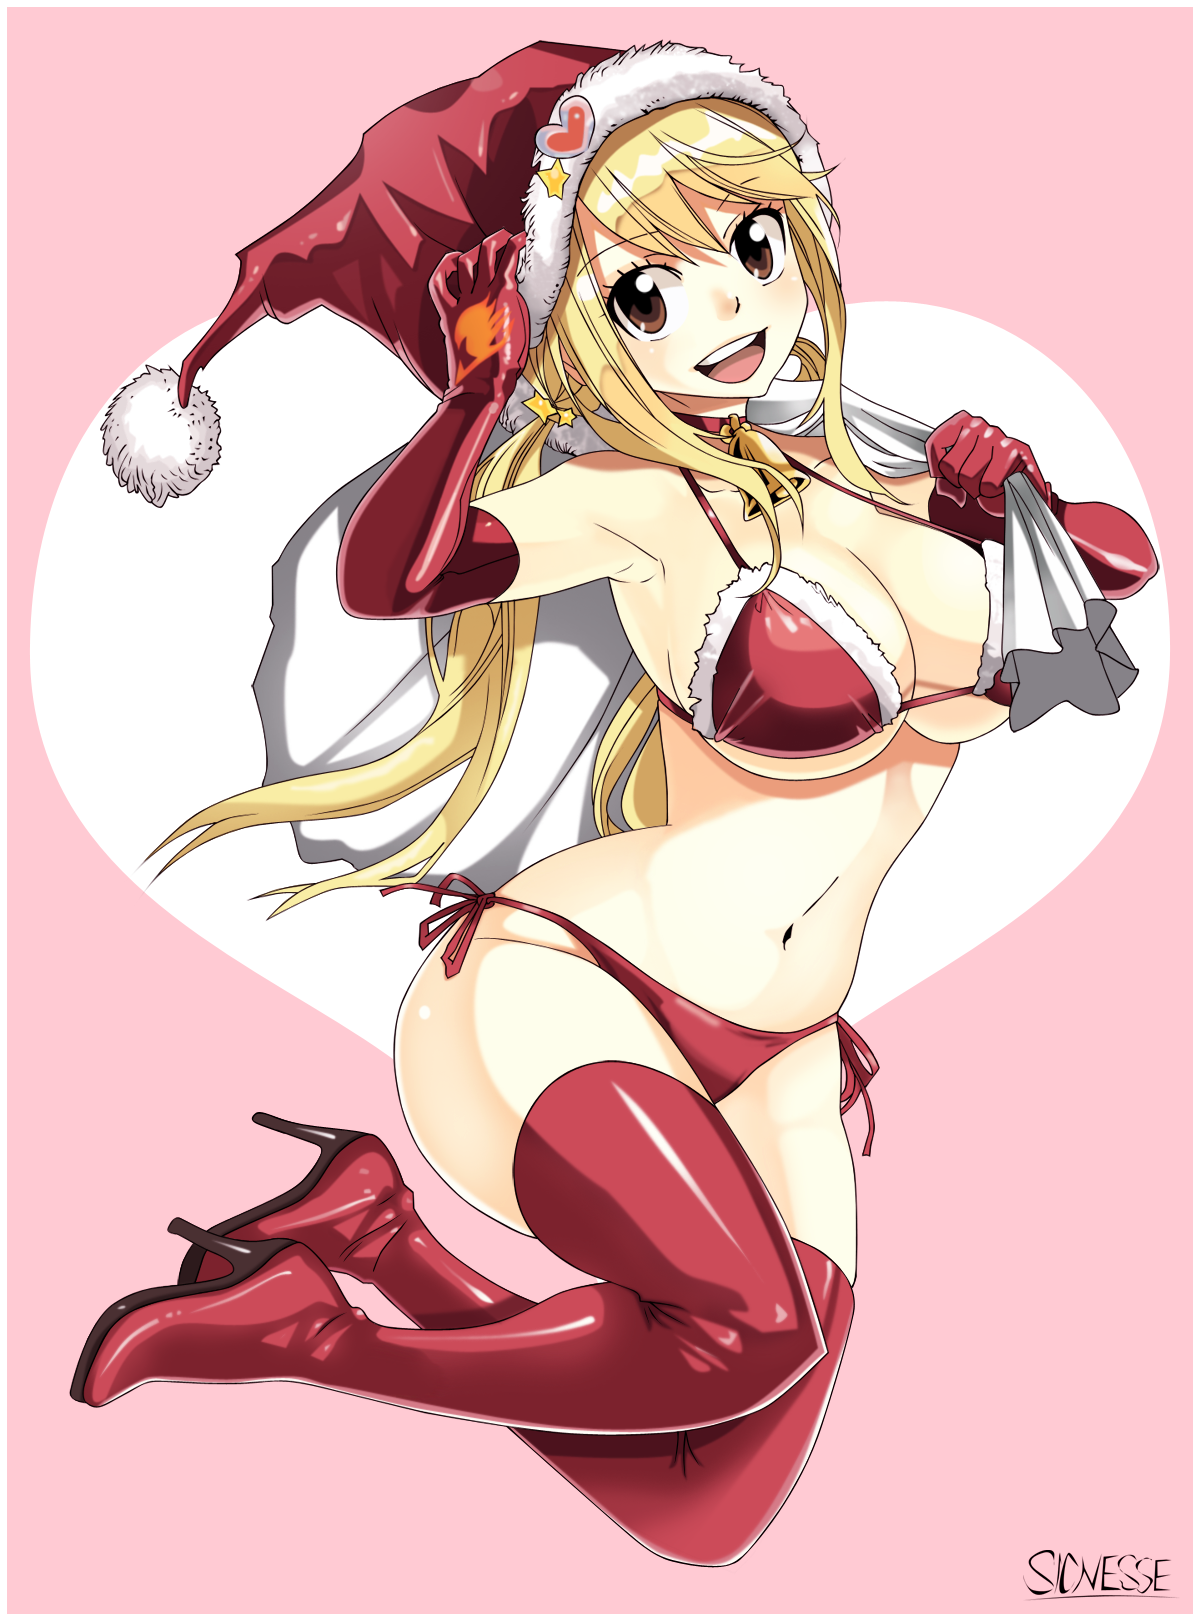 Sexy Santa Lucy - anime và các nhân vật nóng bỏng, quyến rũ người hâm mộ  Art (39143012) - fanpop